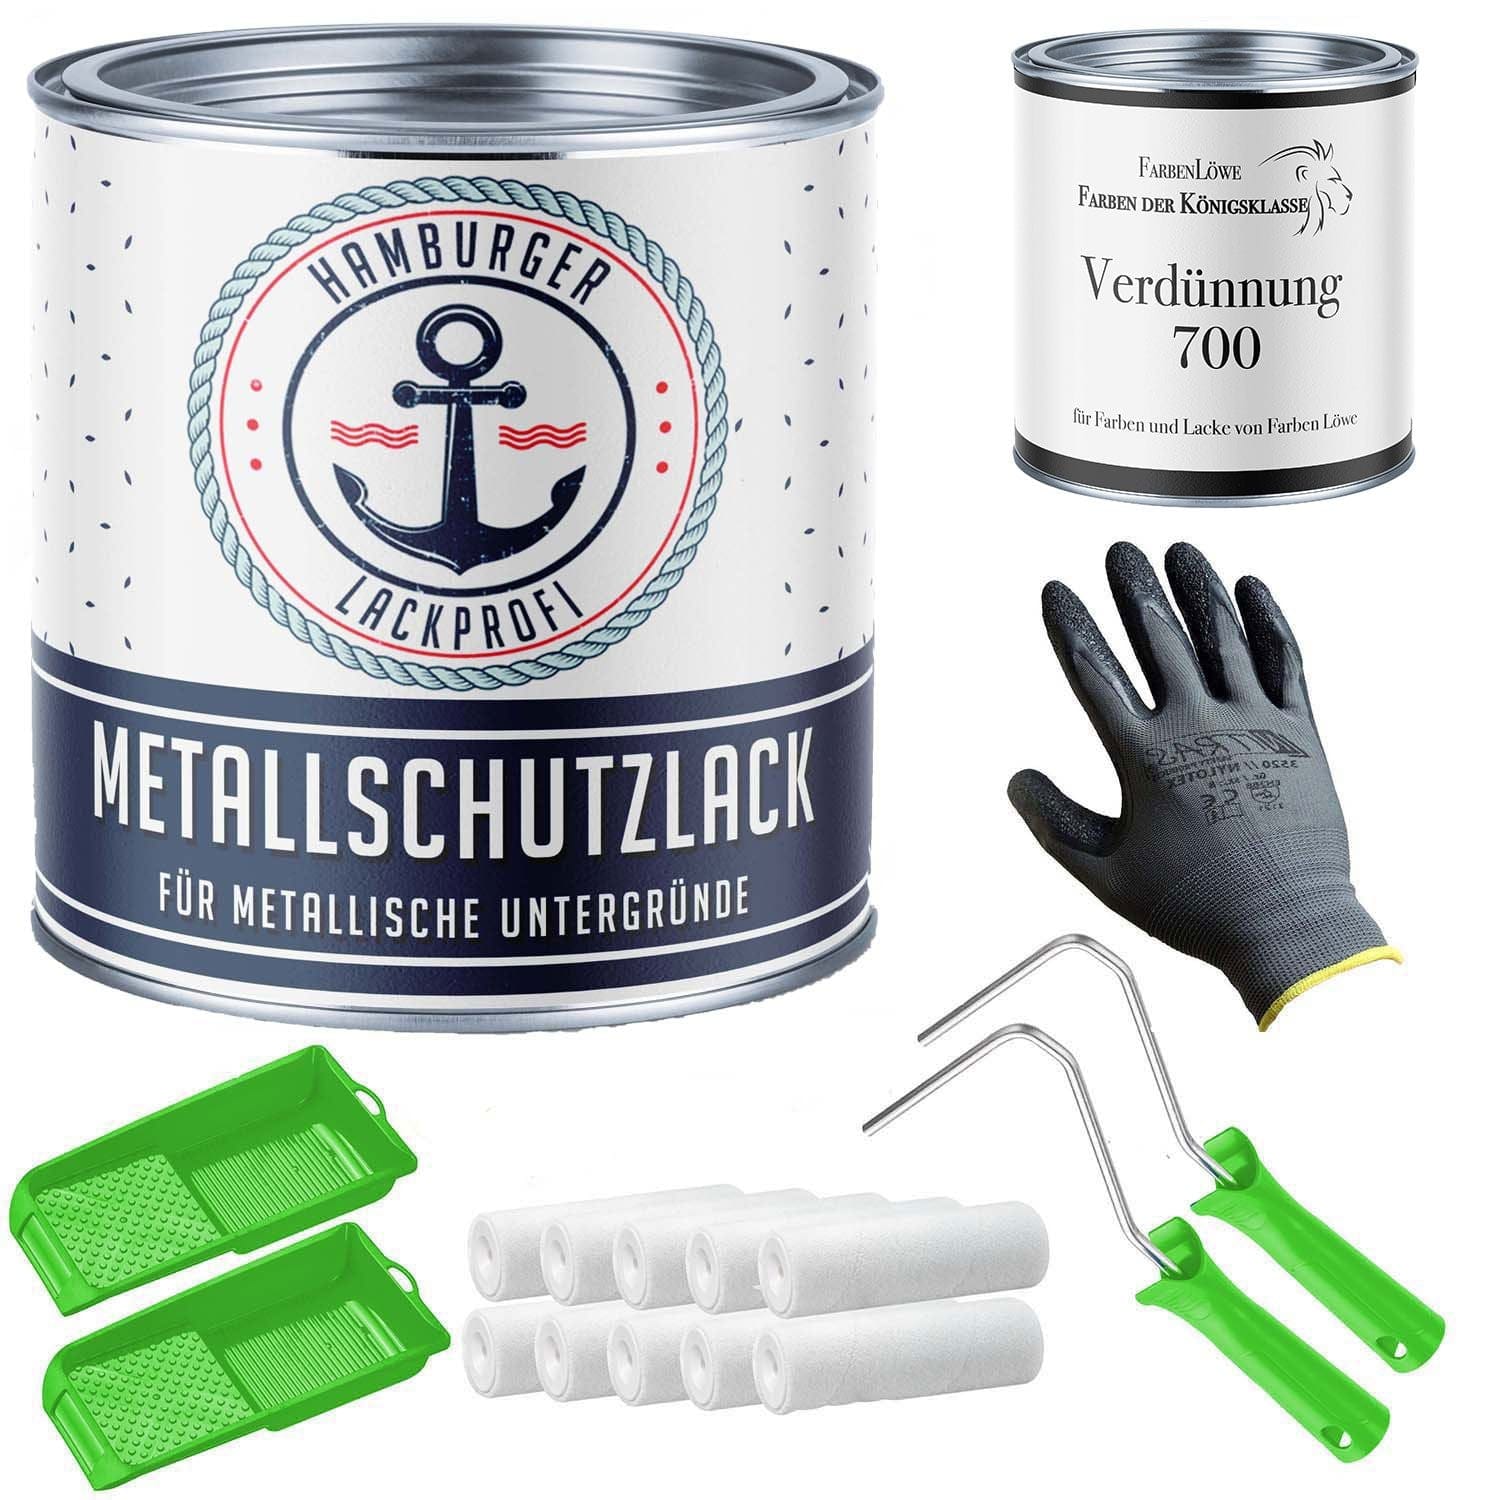 FARBENLÖWE Lacke & Beschichtungen Hamburger Lack-Profi Metallschutzlack in Enzianblau RAL 5010 mit Lackierset (X300) & Verdünnung (1 L) - 30% Sparangebot